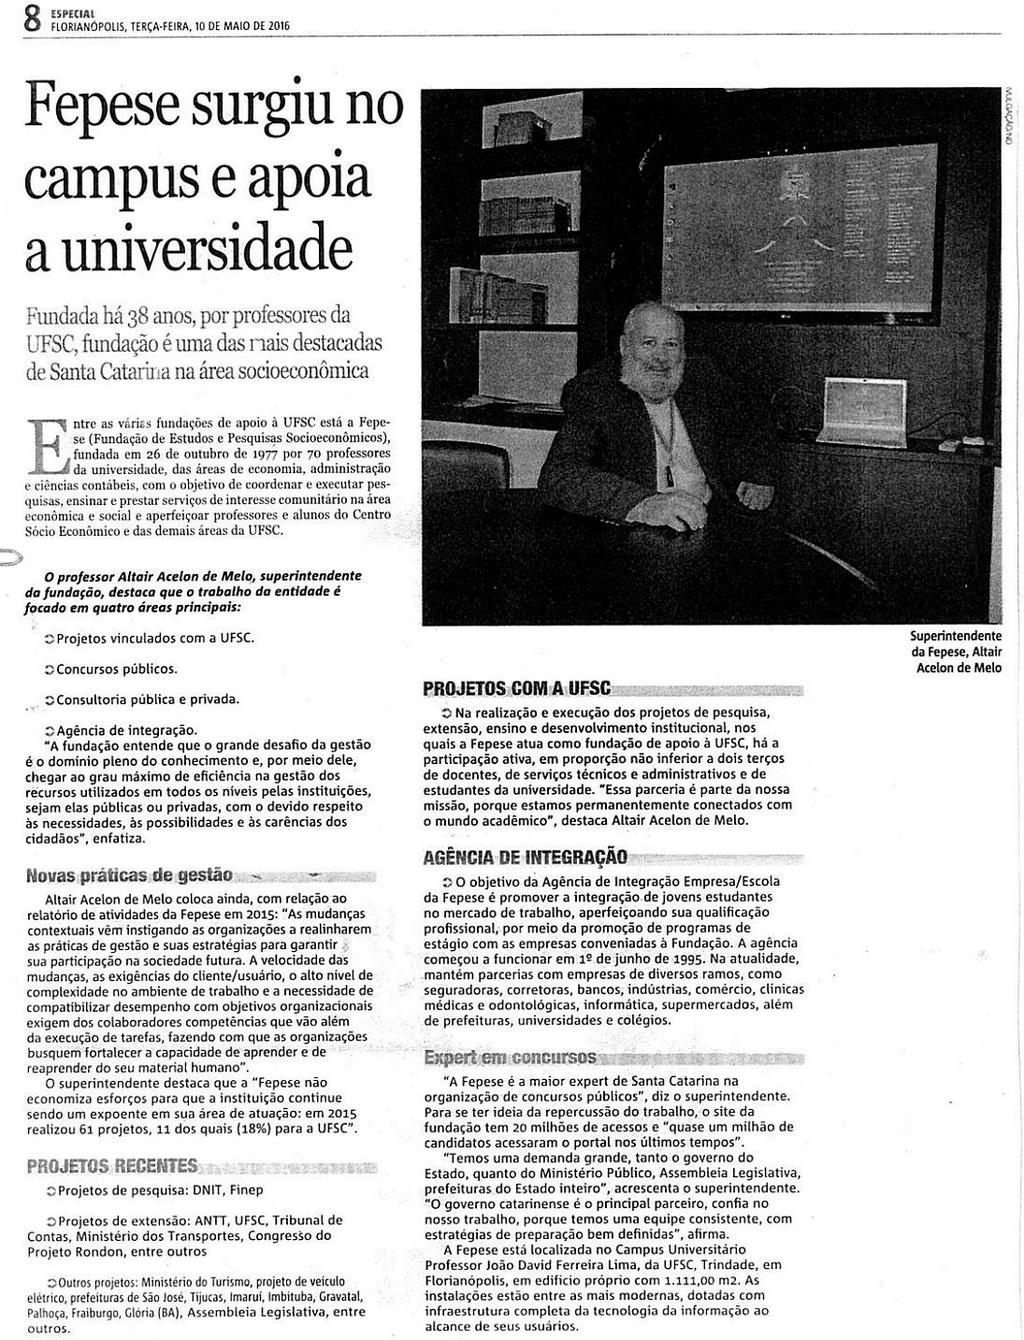 Notícias do Dia - Caderno Especial Fepese surgiu no campus e apoia a universidade Fepese surgiu no campus e apoia a universidade / UFSC